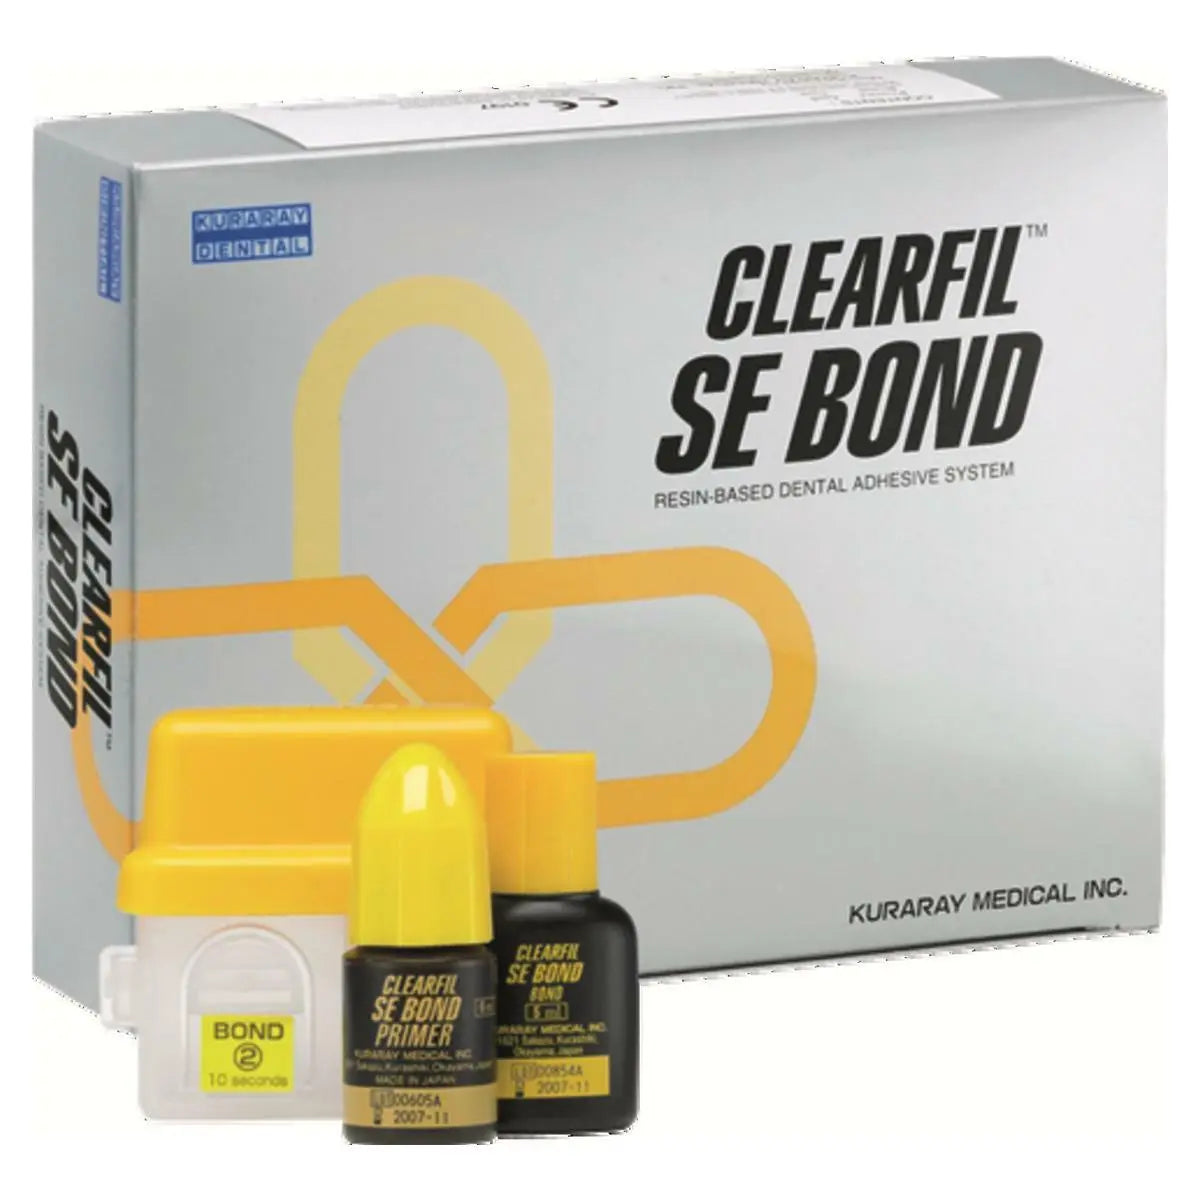 kuraray-clearfil-se-bond-light-cure-dental-bonding-kit